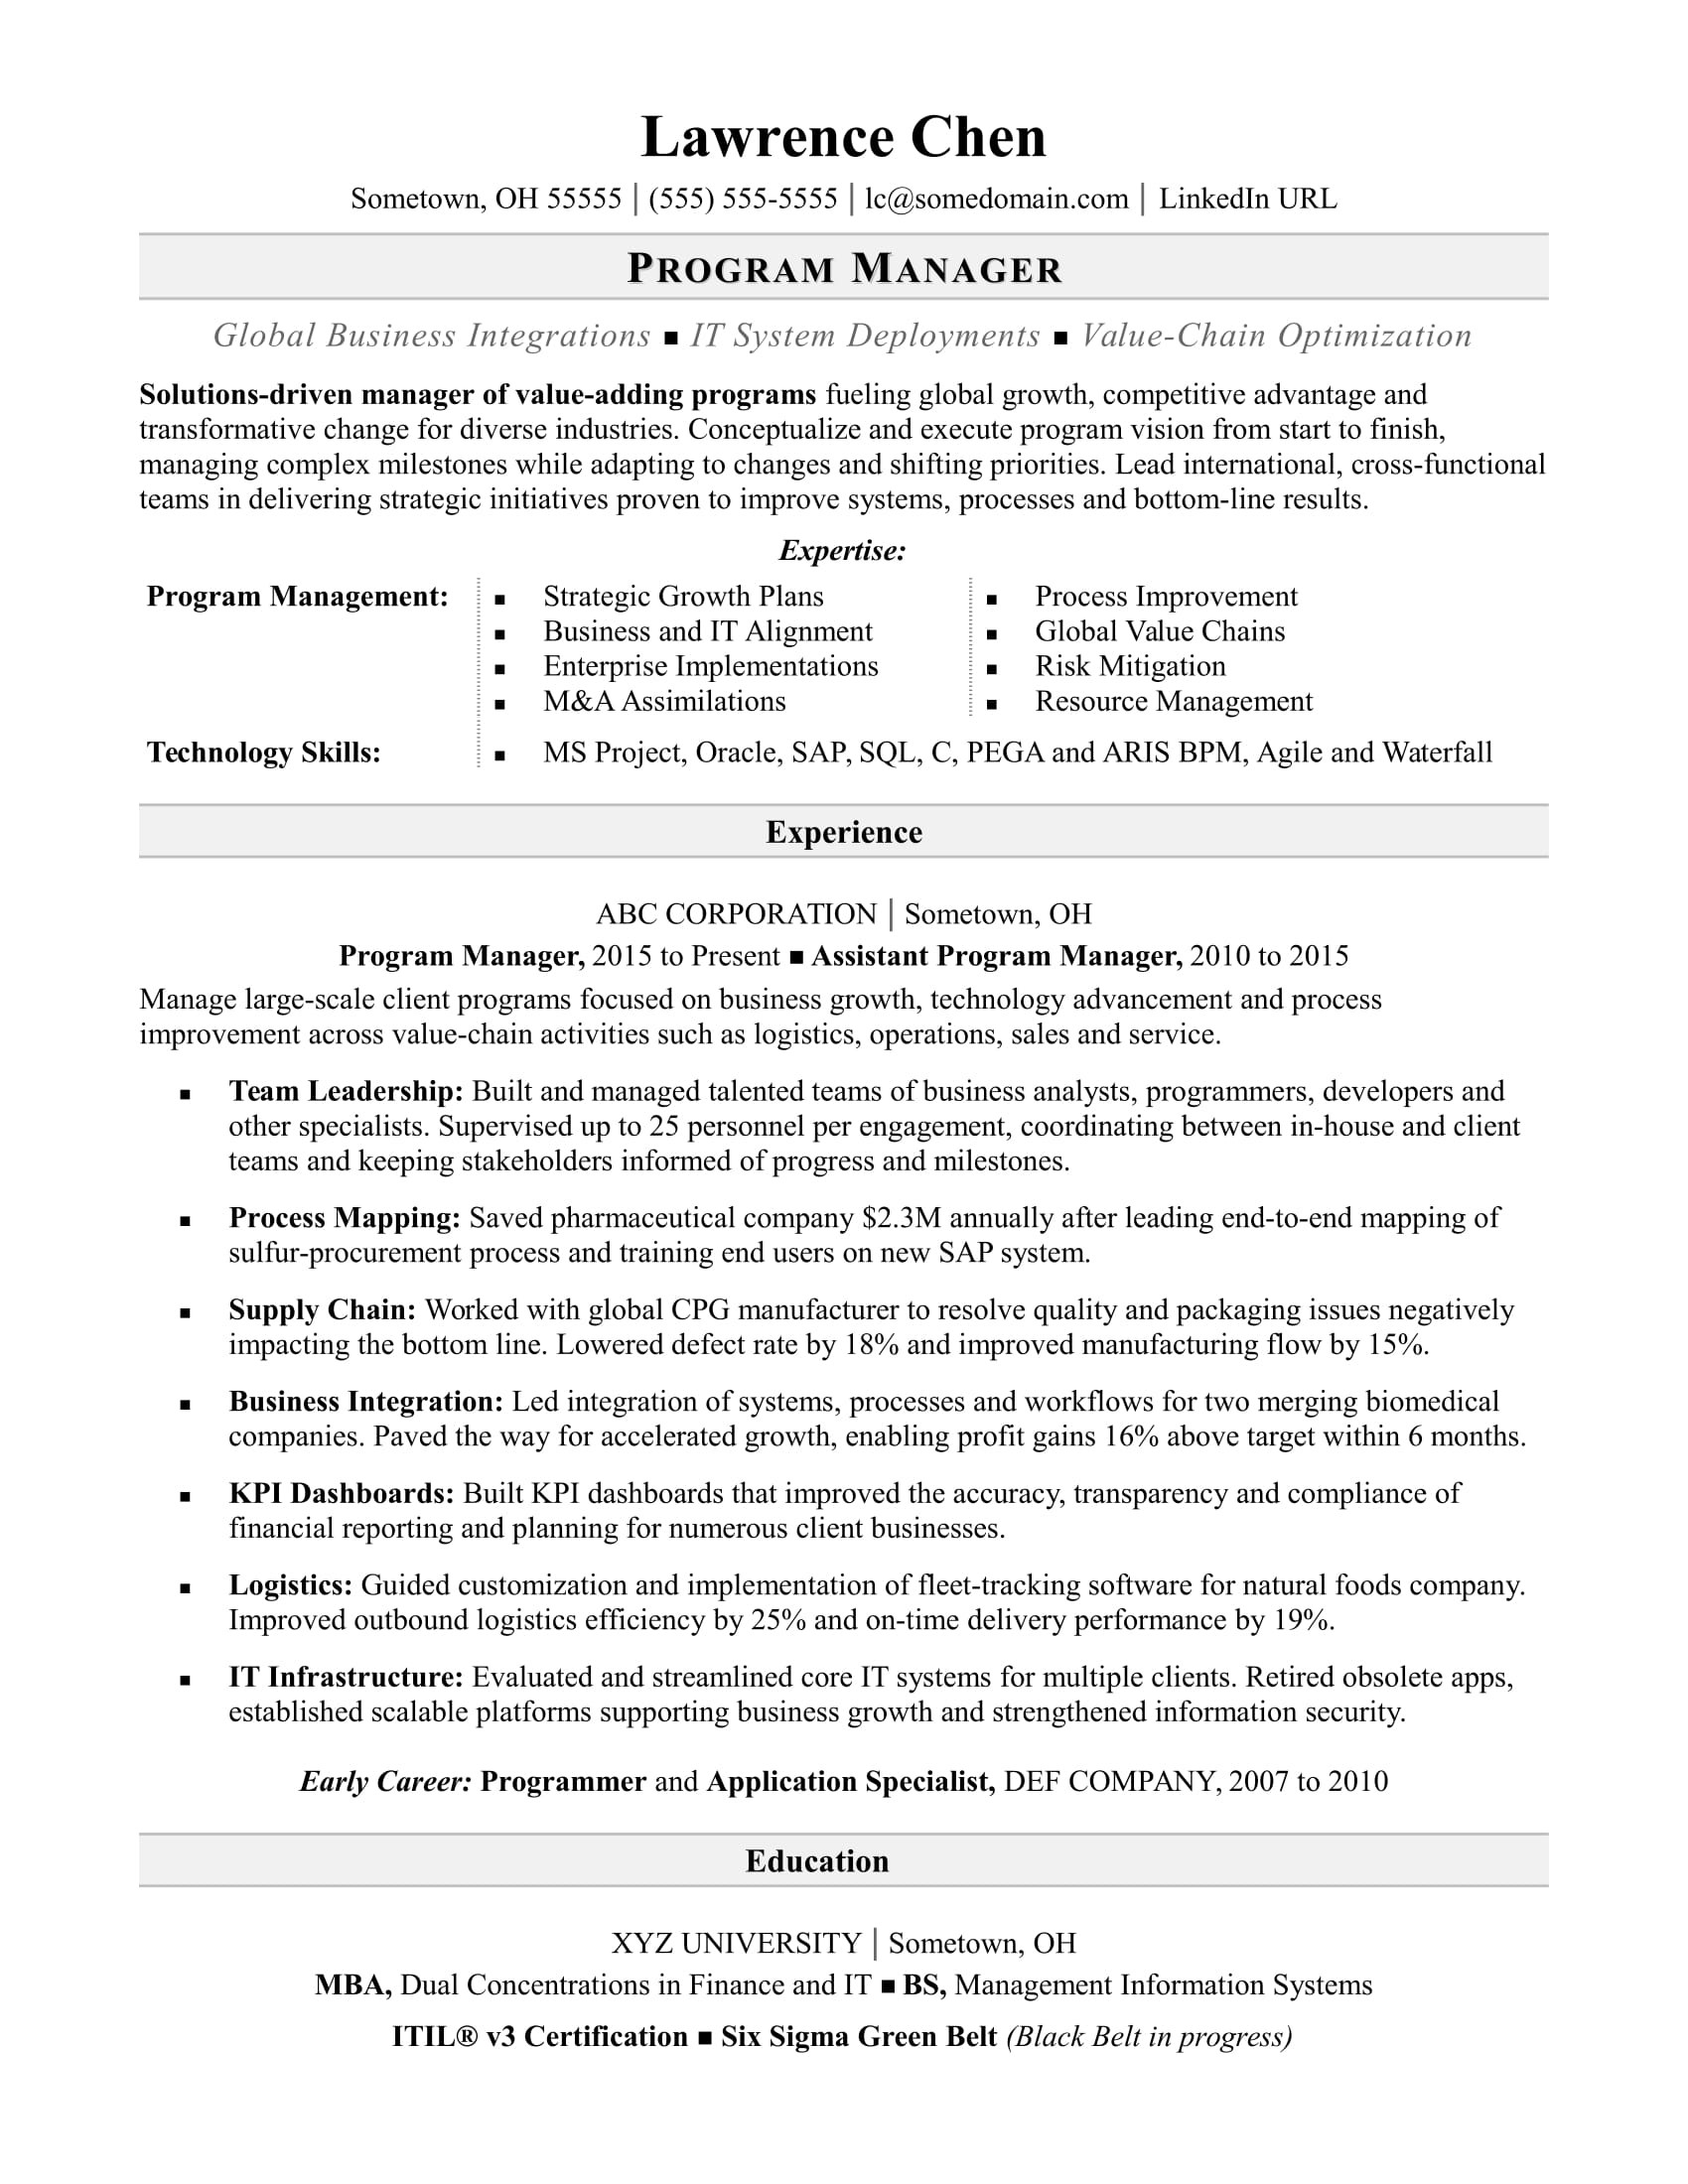 Sample Resume for Google Maps Job Program Manager Resume Monster.com